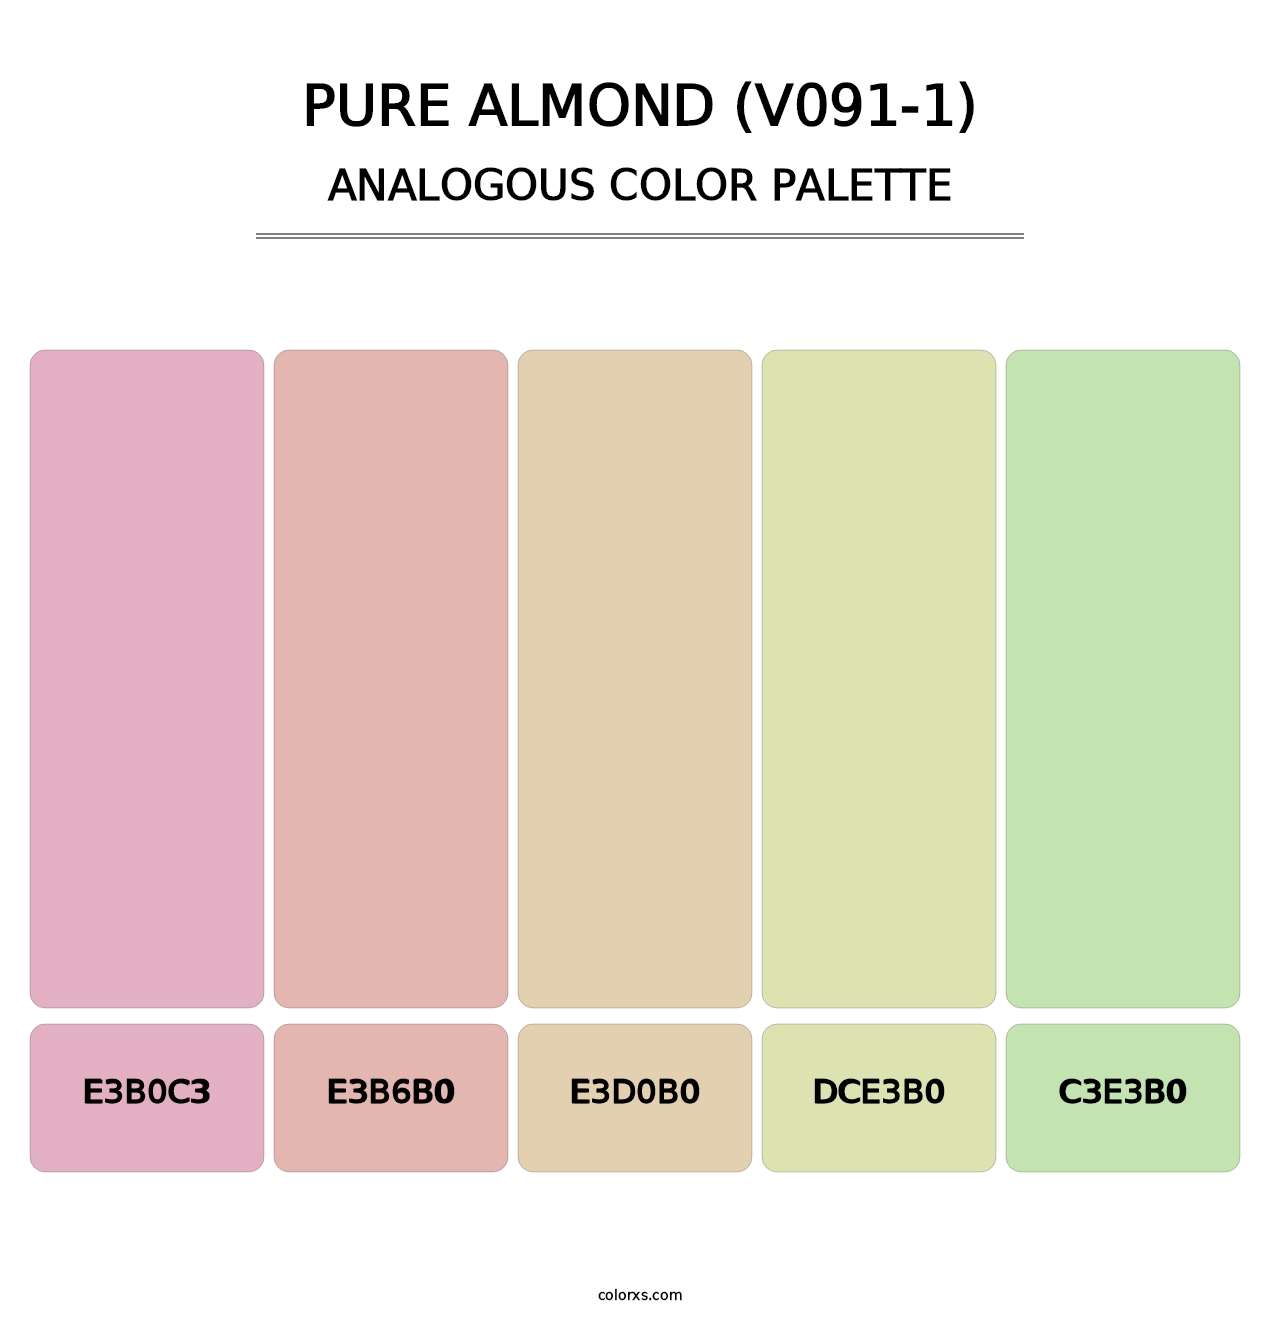 Pure Almond (V091-1) - Analogous Color Palette